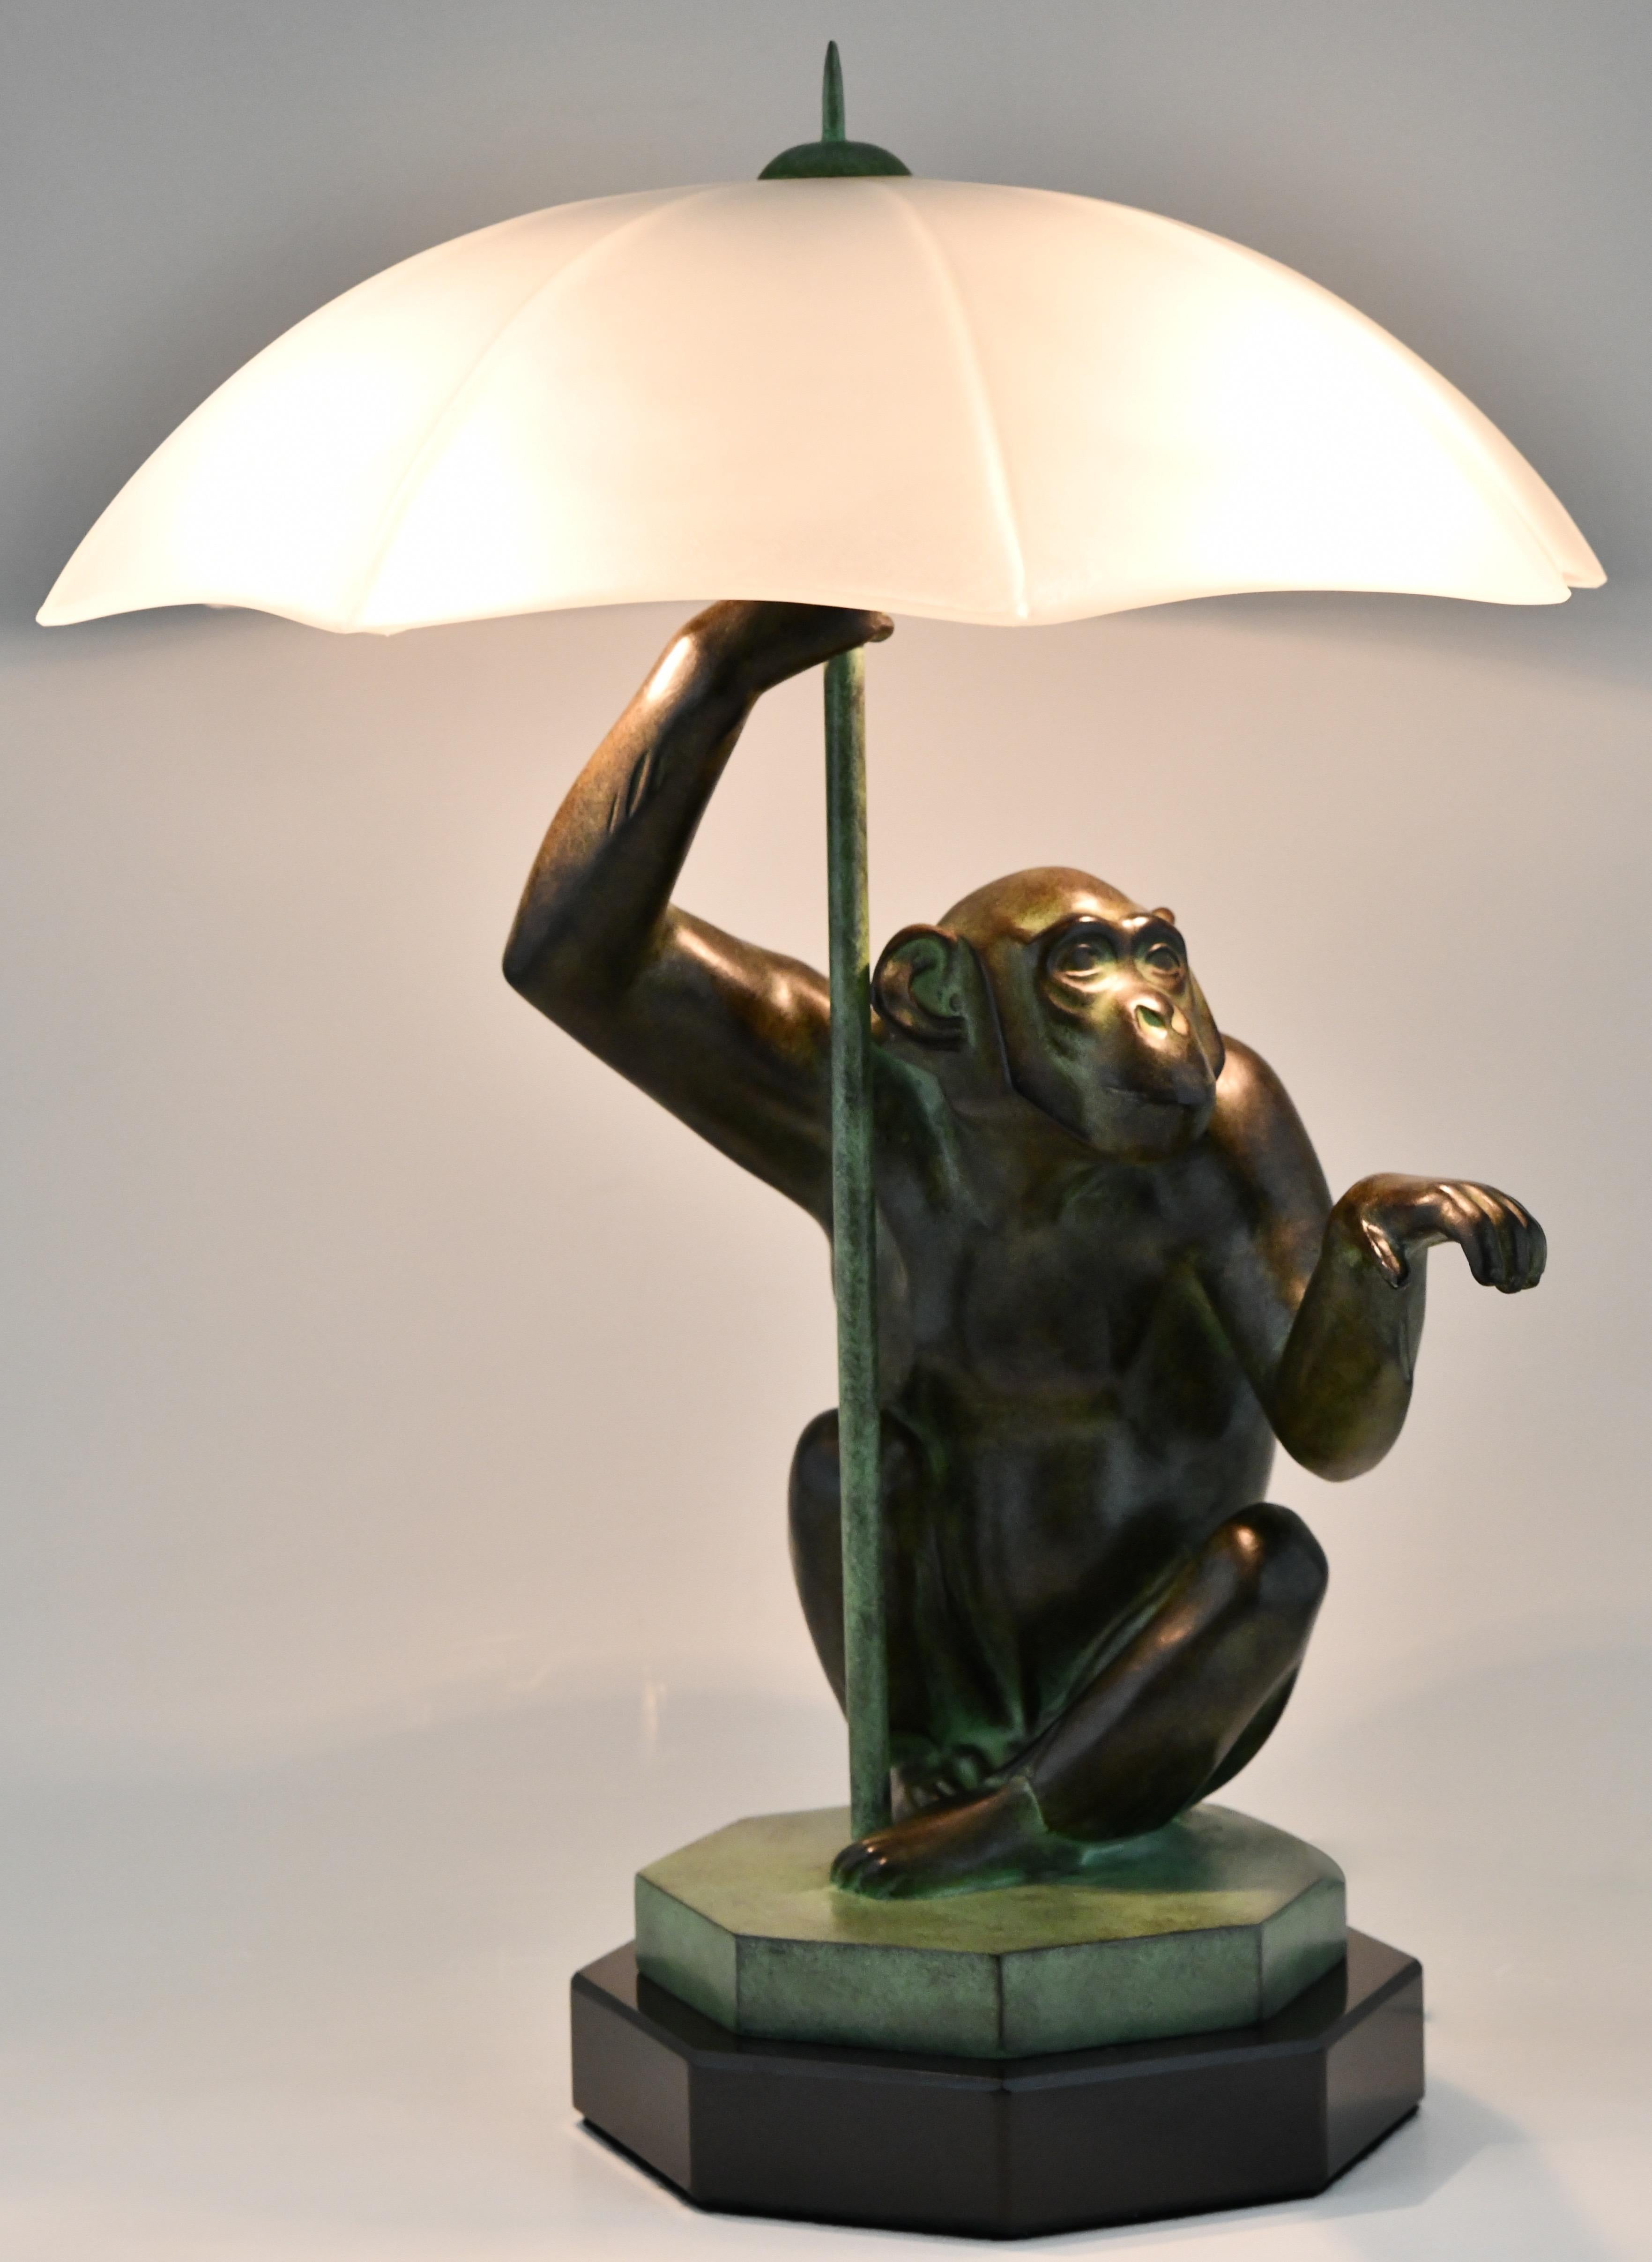 Monkey on Globe Desk Lamp Art Glass Shade Illuminated Sculpture 